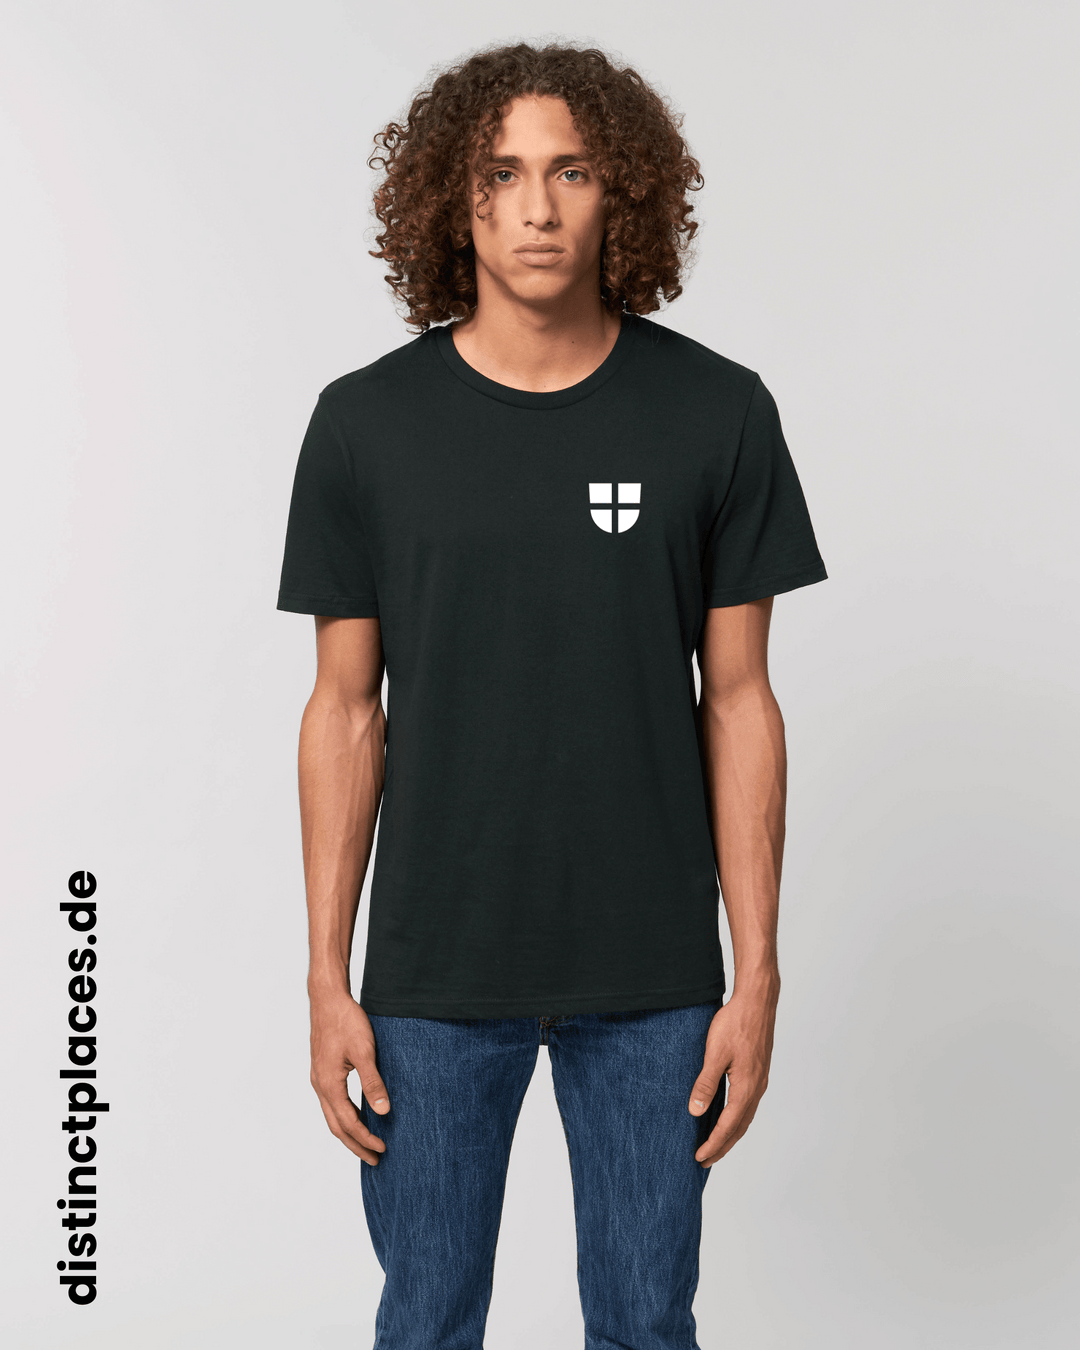 Mann von vorne trägt schwarzes fairtrade, vegan und bio-baumwoll T-Shirt mit einem minimalistischem weißen Logo, beziehungsweise Wappen für Heidelberg